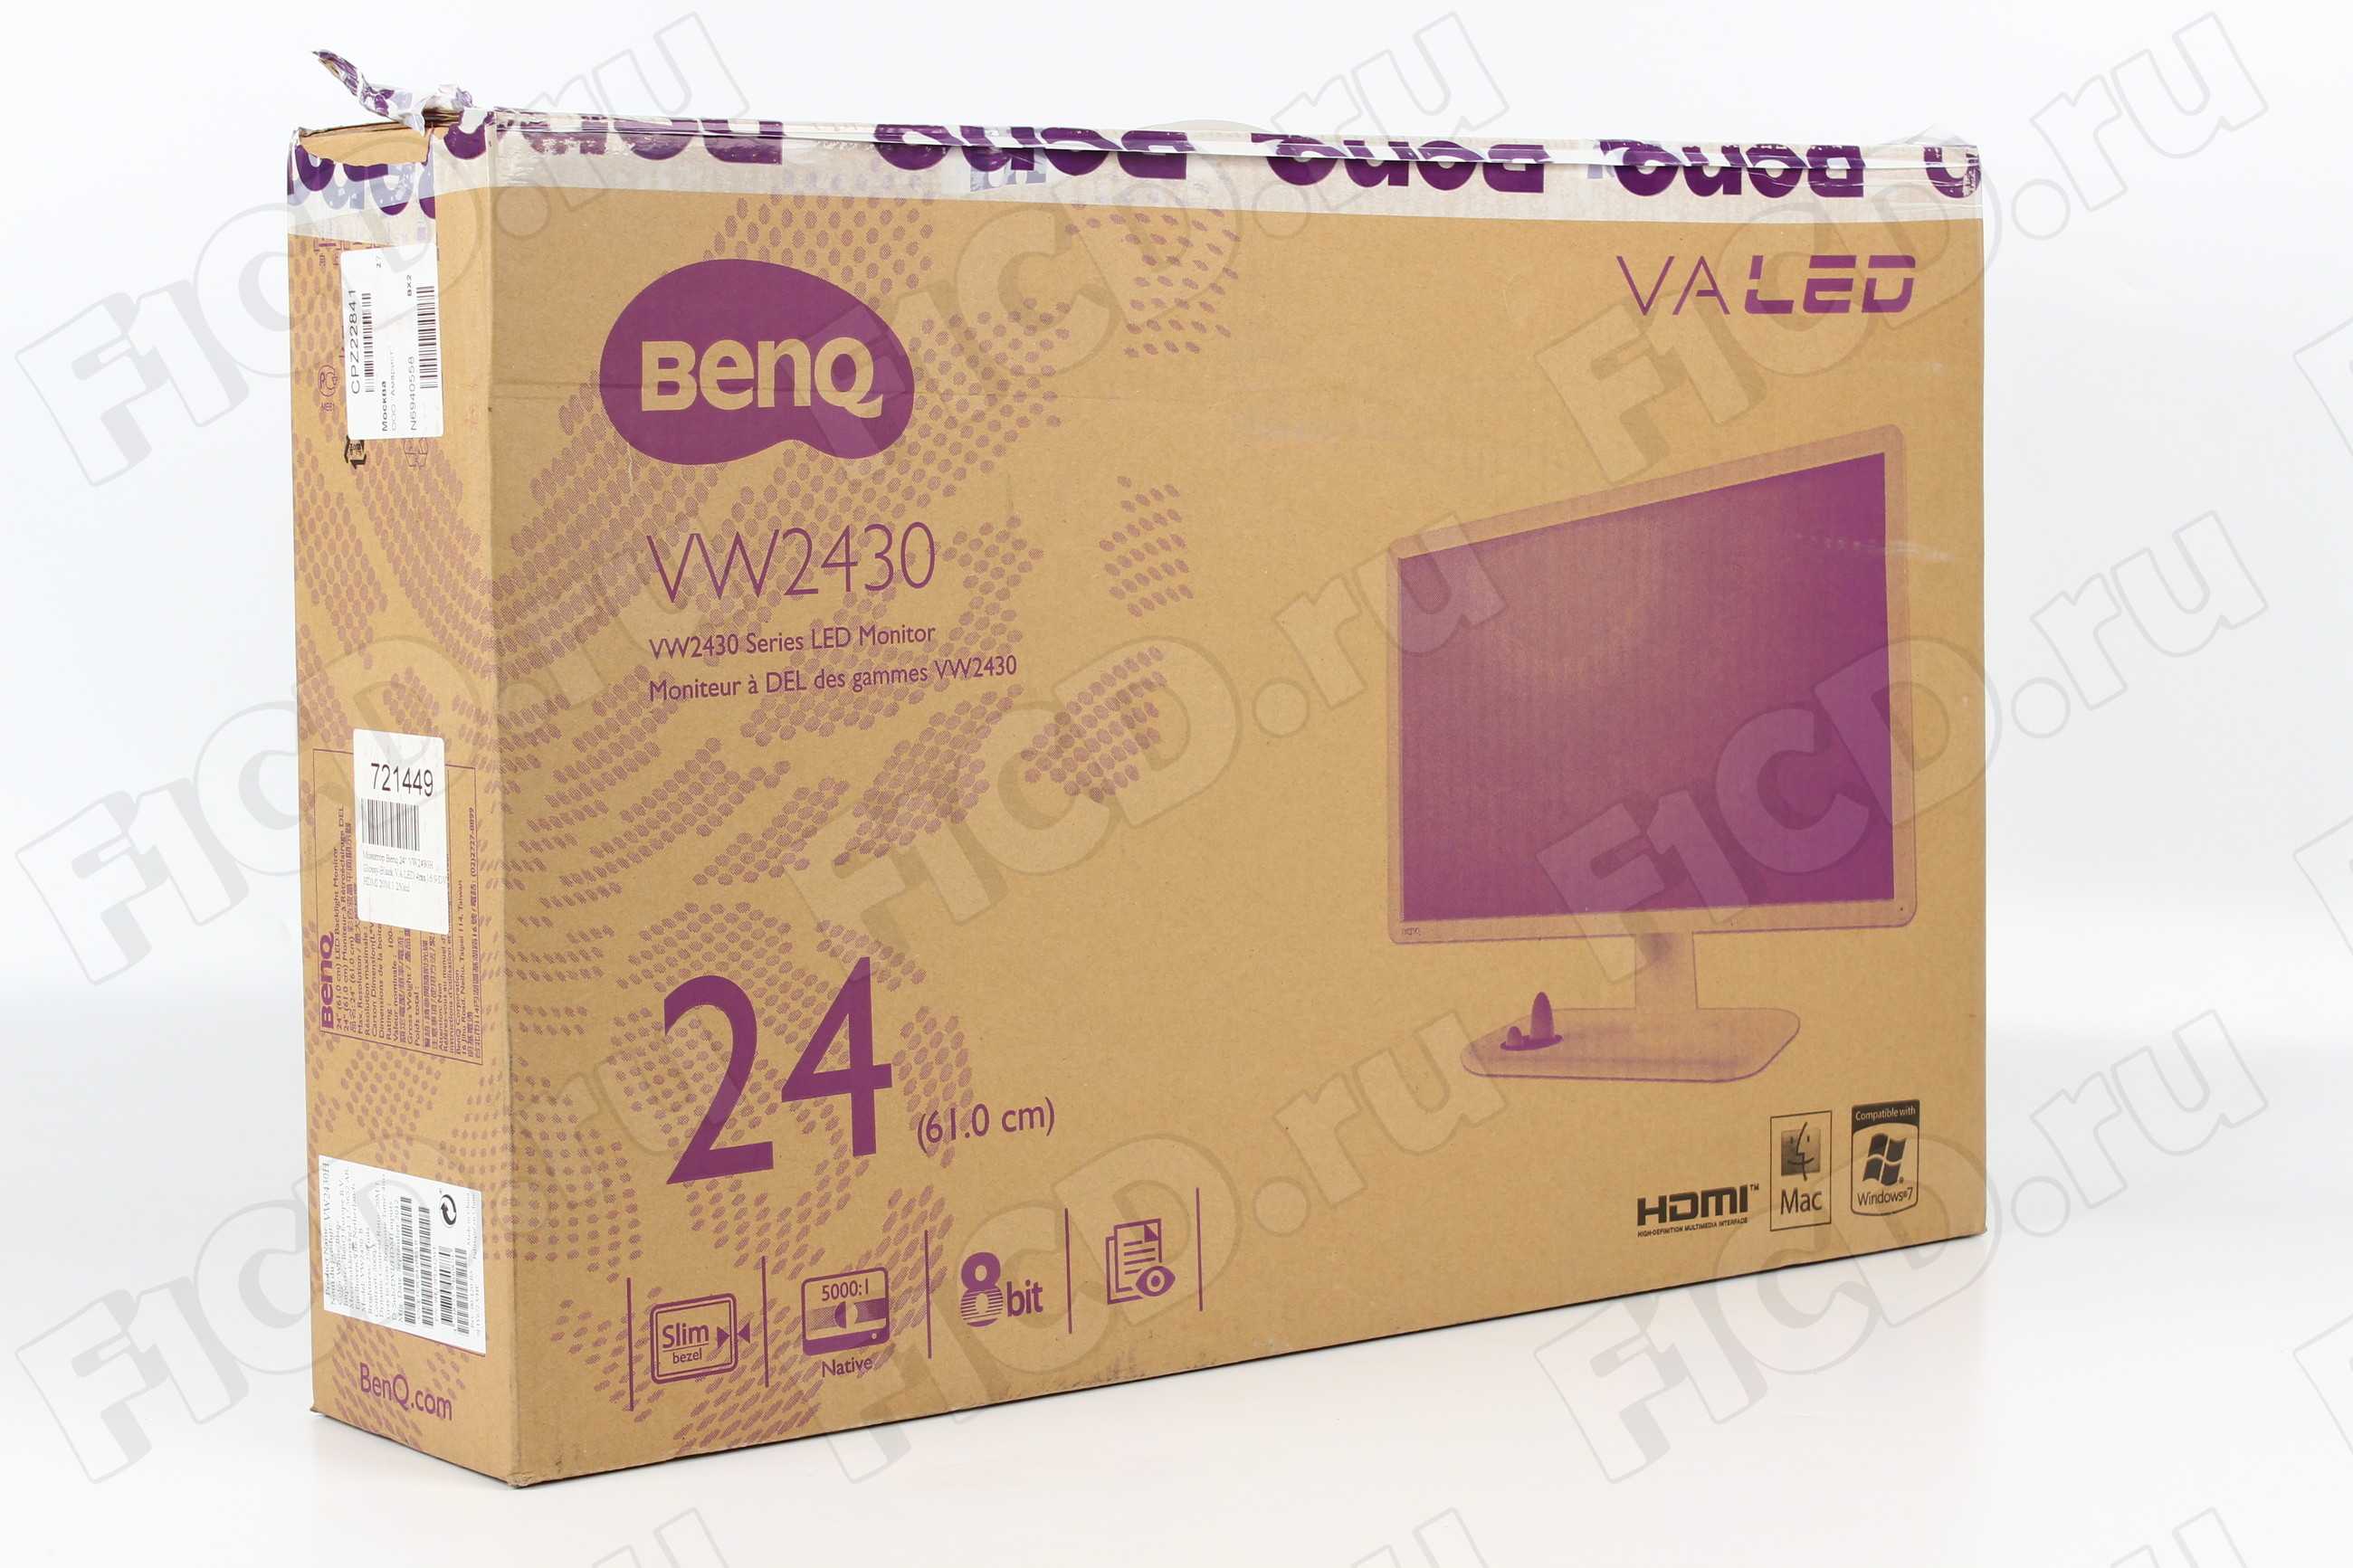 Жк монитор 21.5" benq vw2230h — купить, цена и характеристики, отзывы